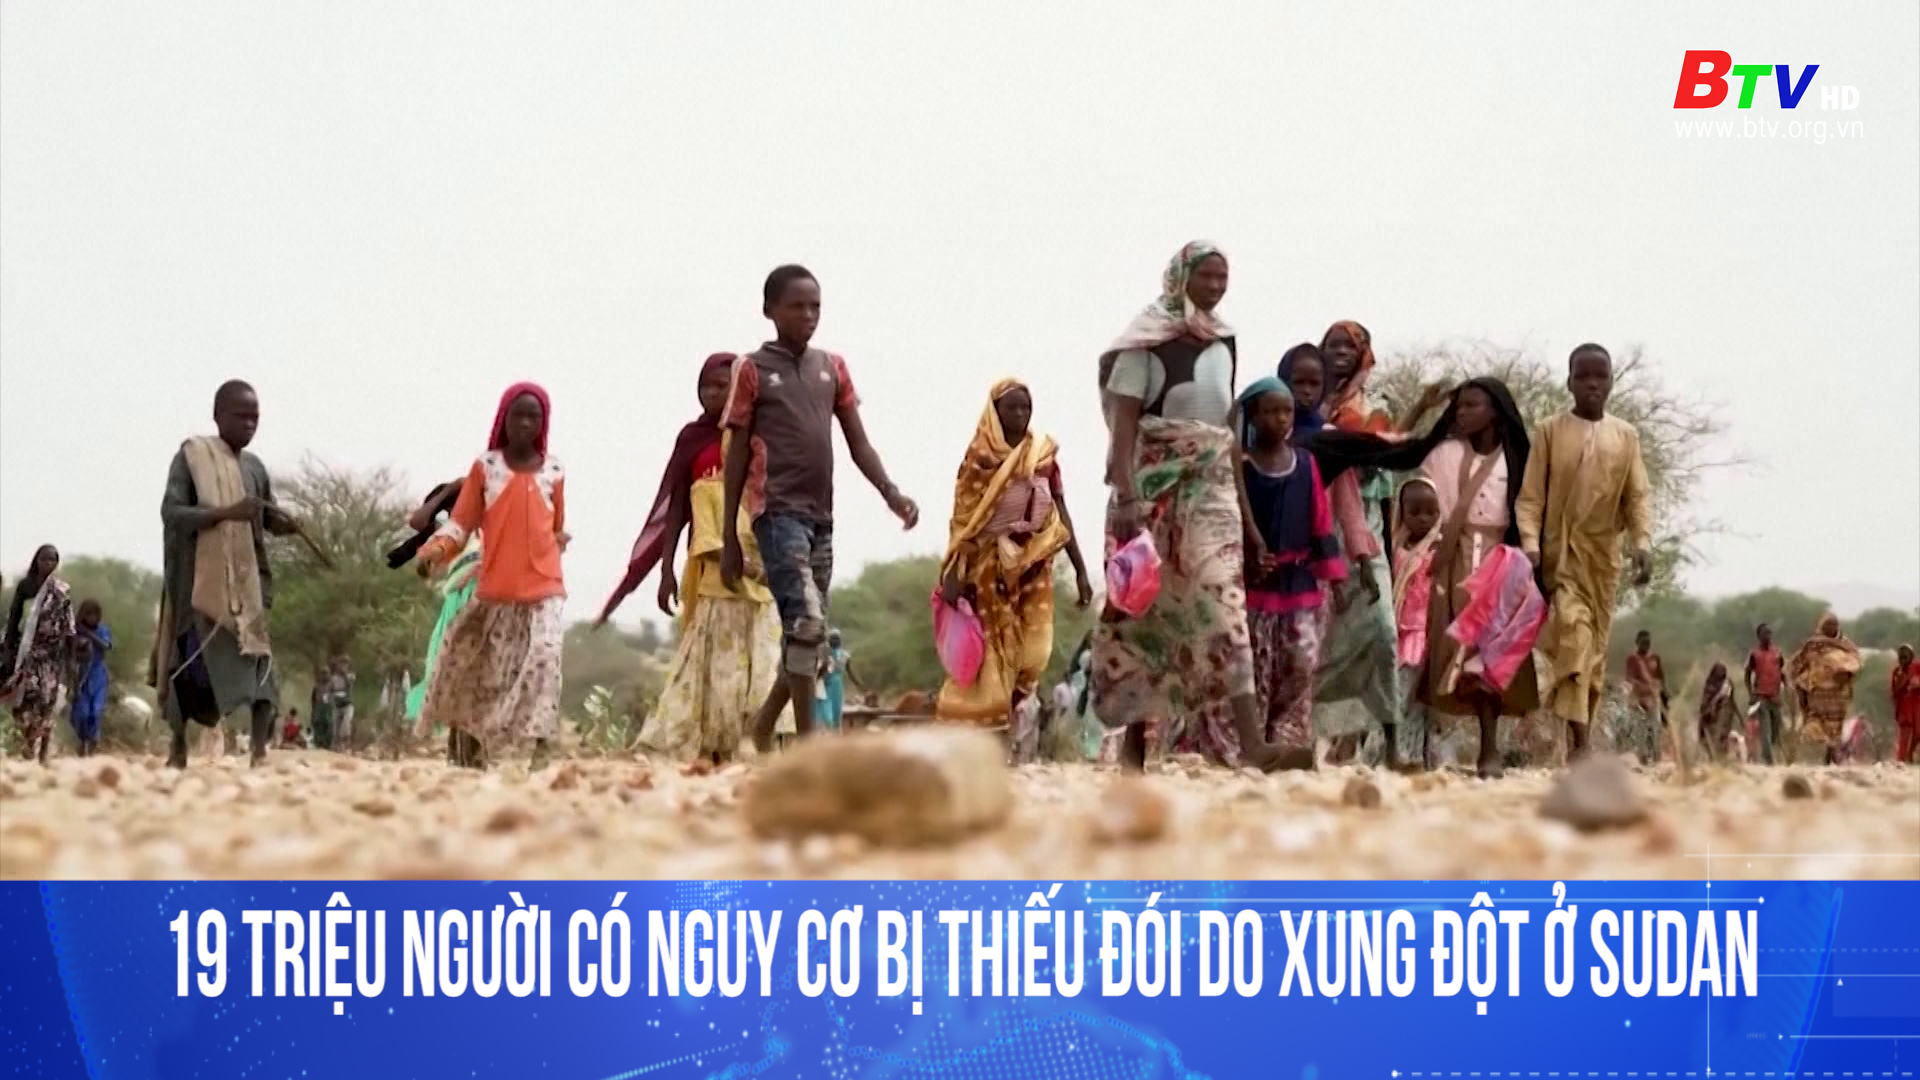 19 triệu người có nguy cơ bị thiếu đói do xung đột ở Sudan